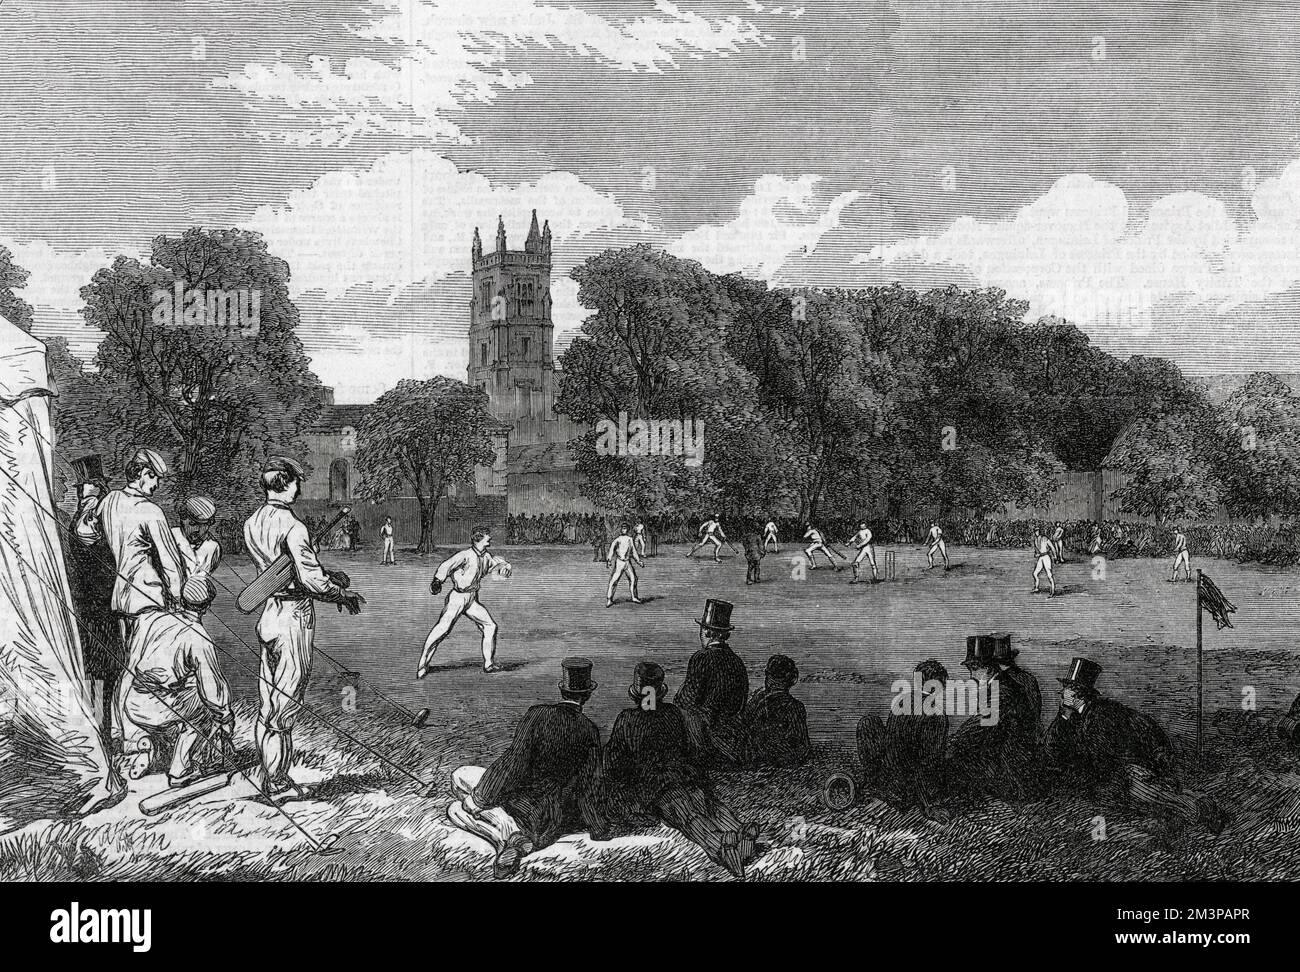 Zwischen Eton und Winchester College findet in Winchester ein Cricket-Spiel statt. Viele Zuschauer treffen sich, um das Spiel zu sehen. 1864 Stockfoto